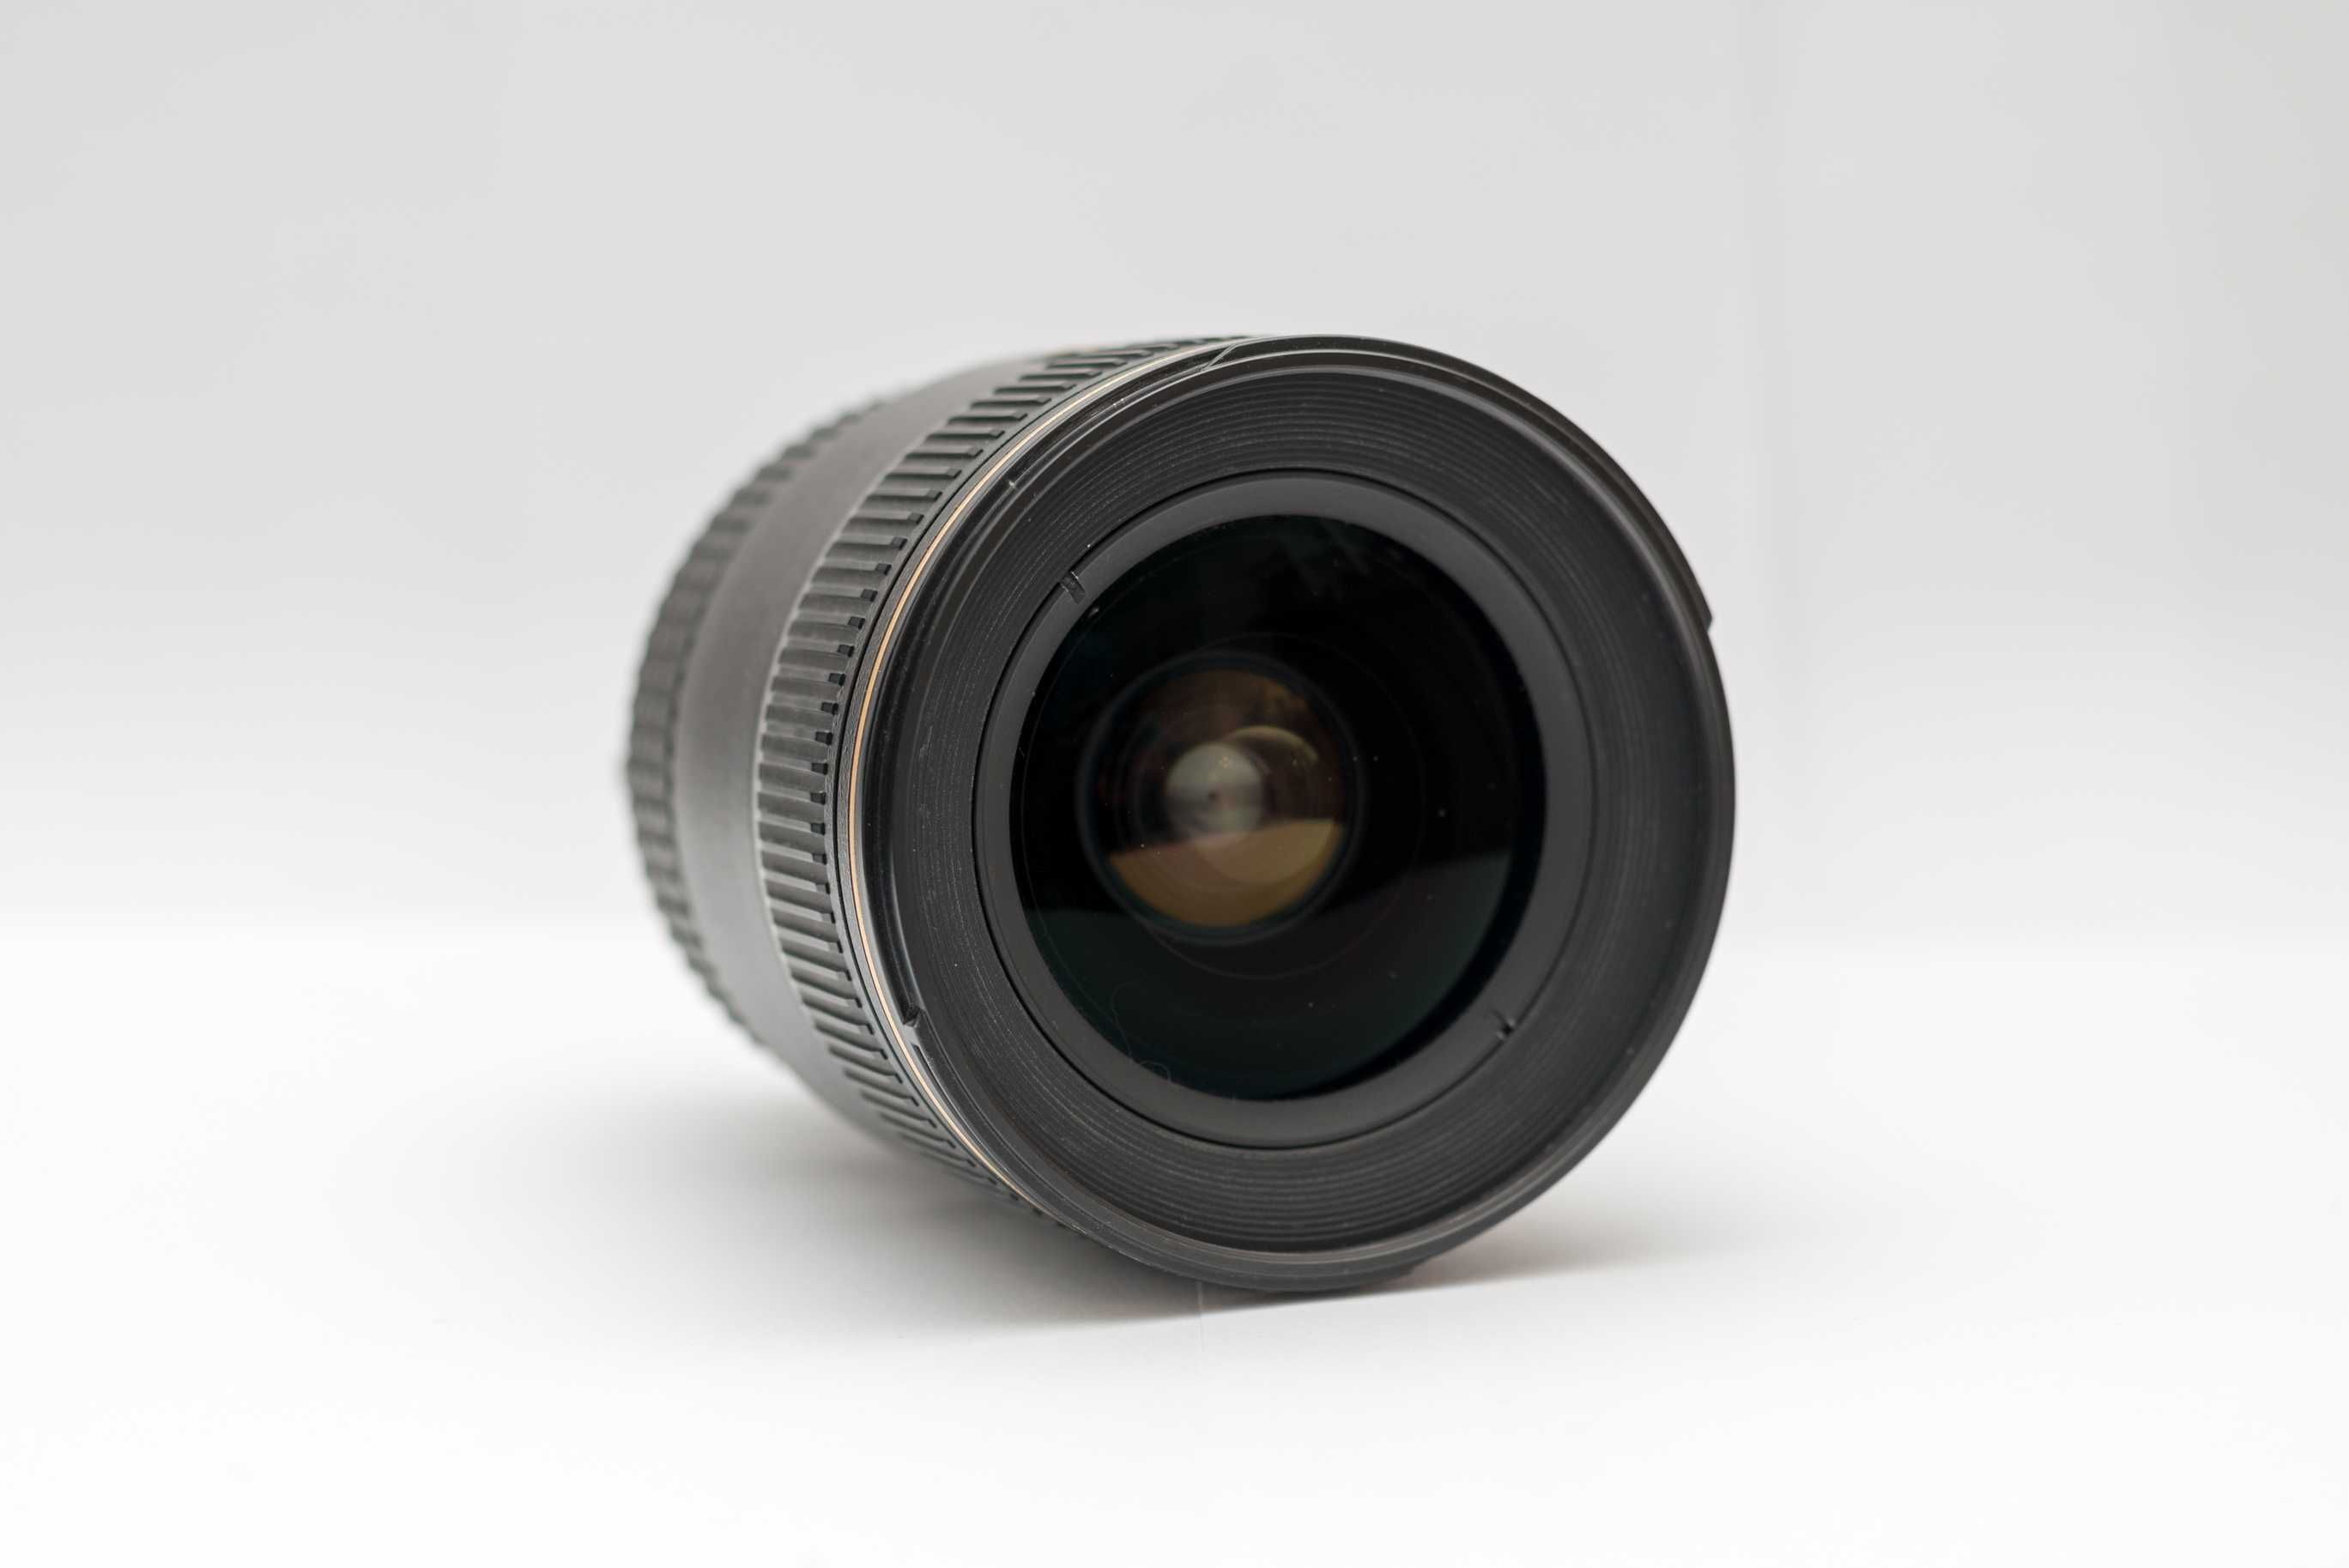 Obiectiv Nikon 17-35, f 2.8, cu focus manual (auto focus defect)